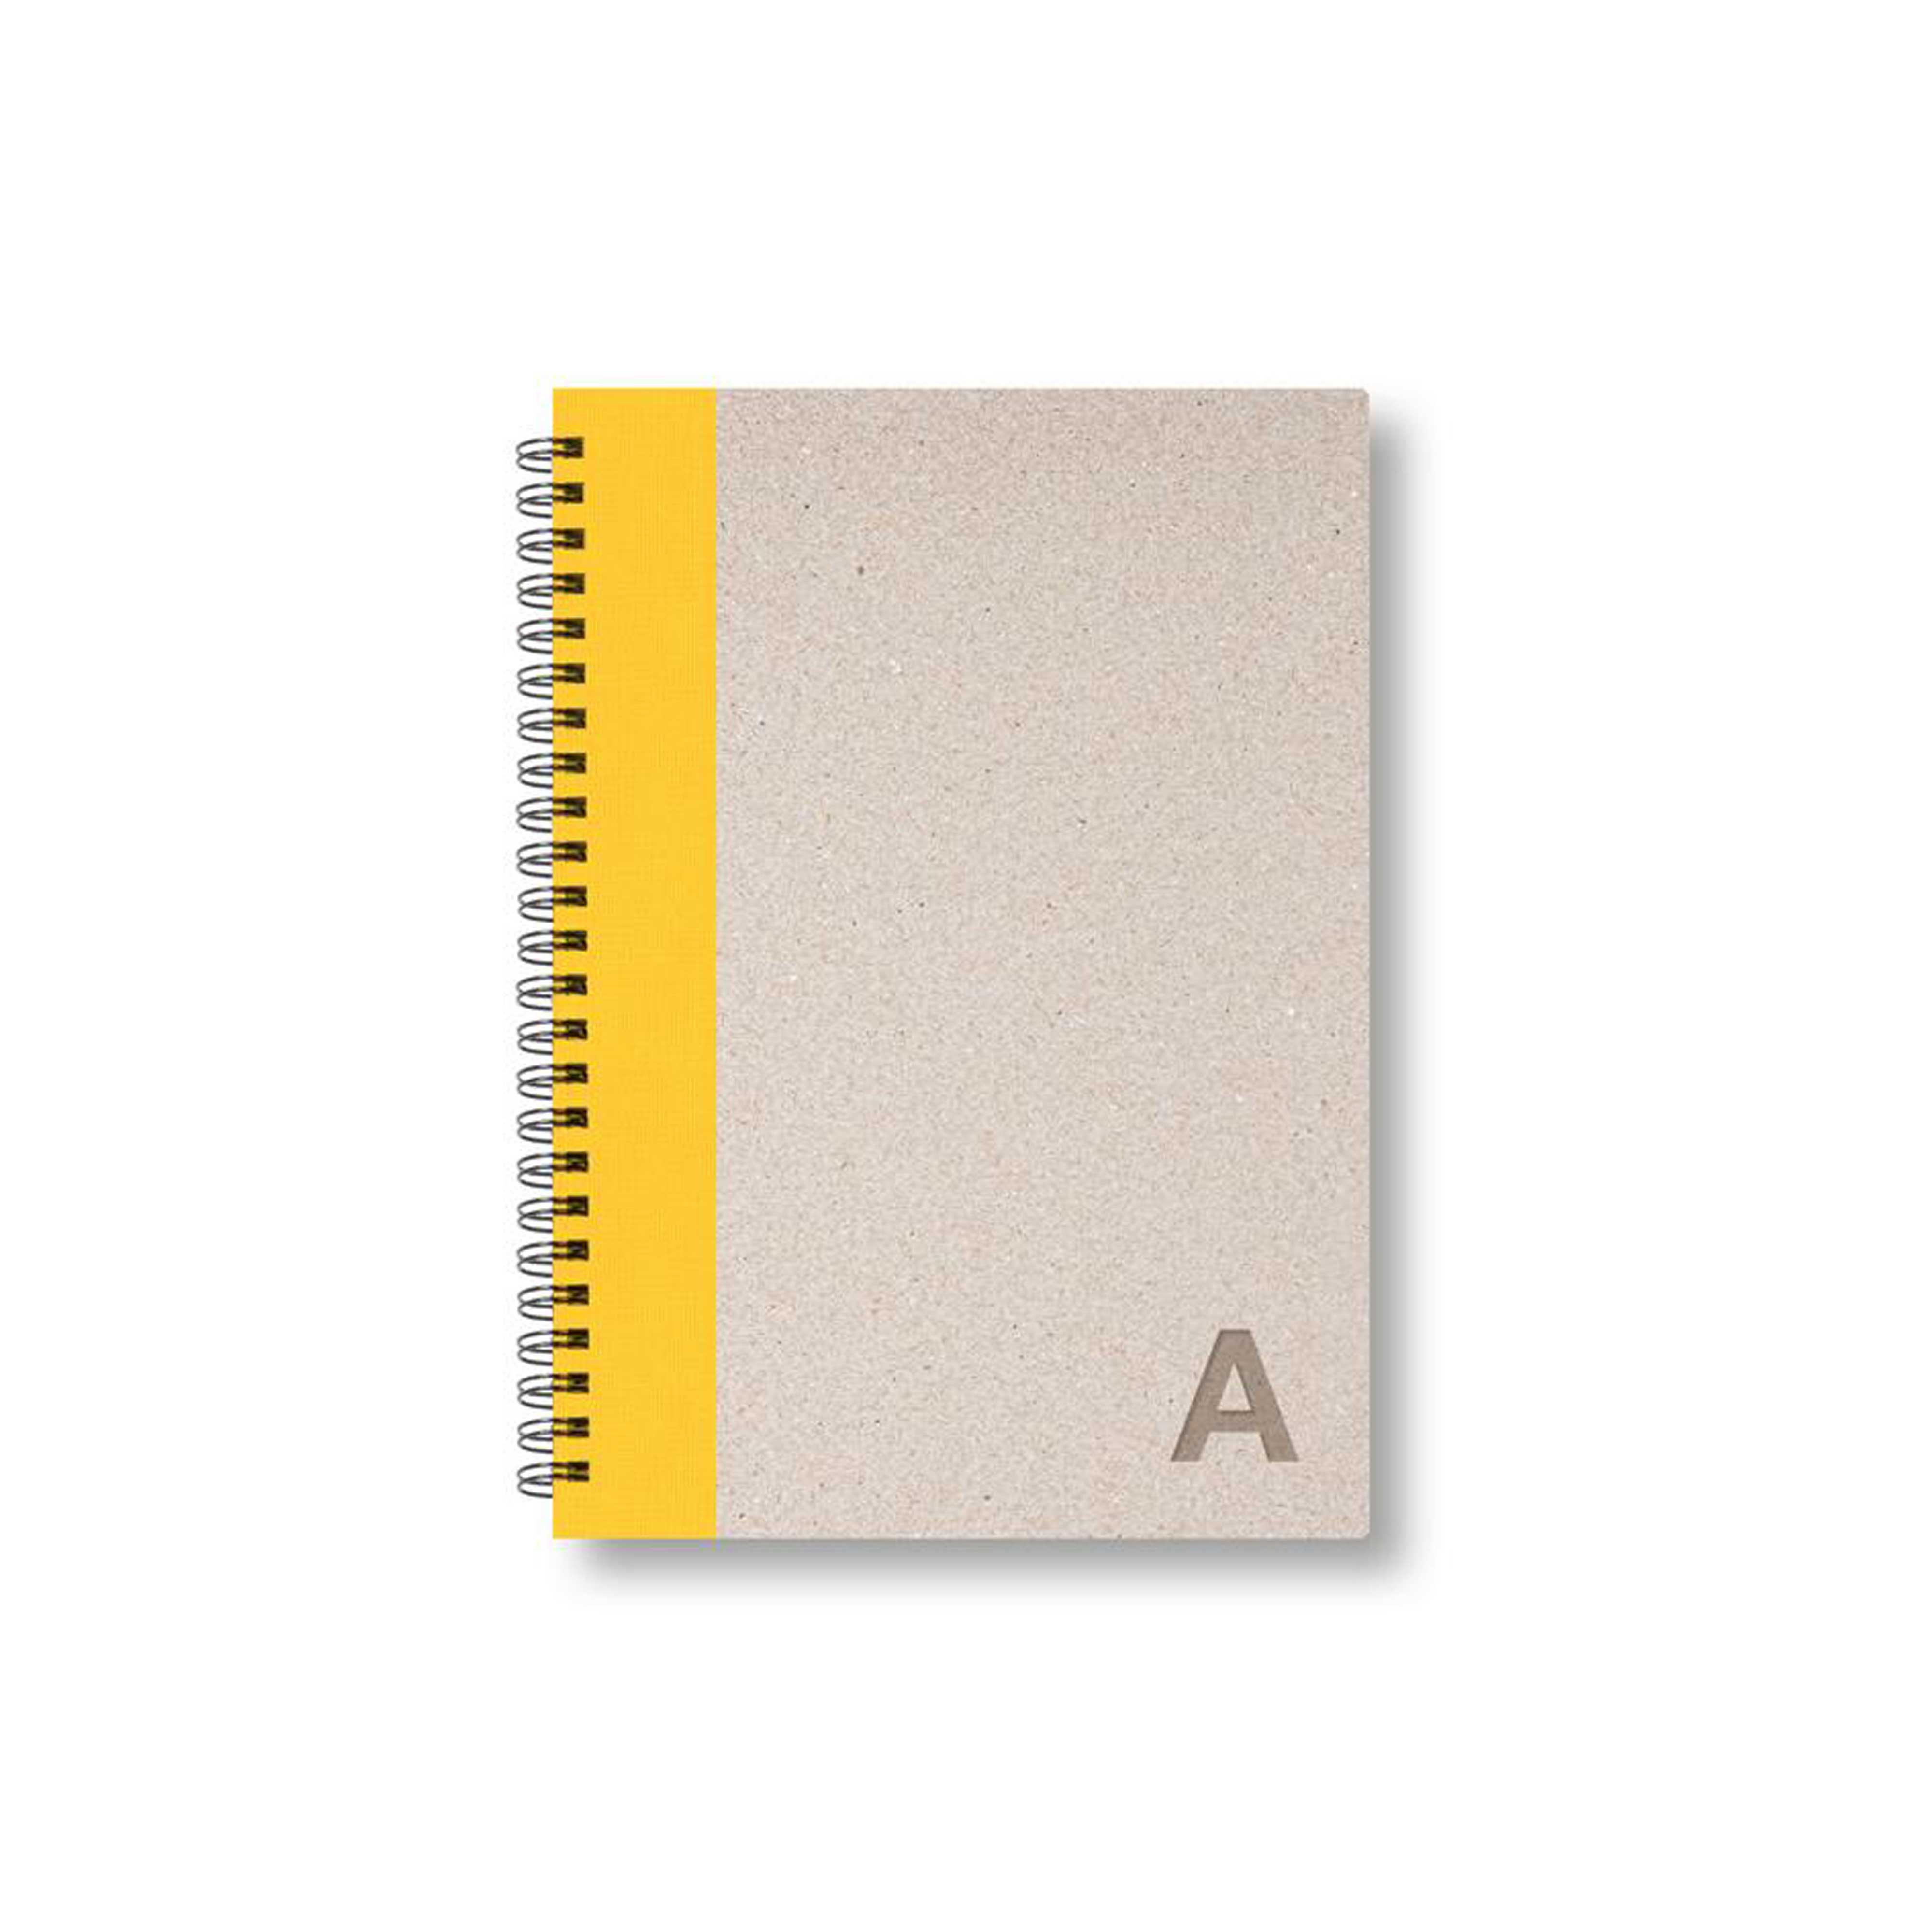 BOBO Zápisník, B6, linkovaný, žlutý, konfiguruj si obálku